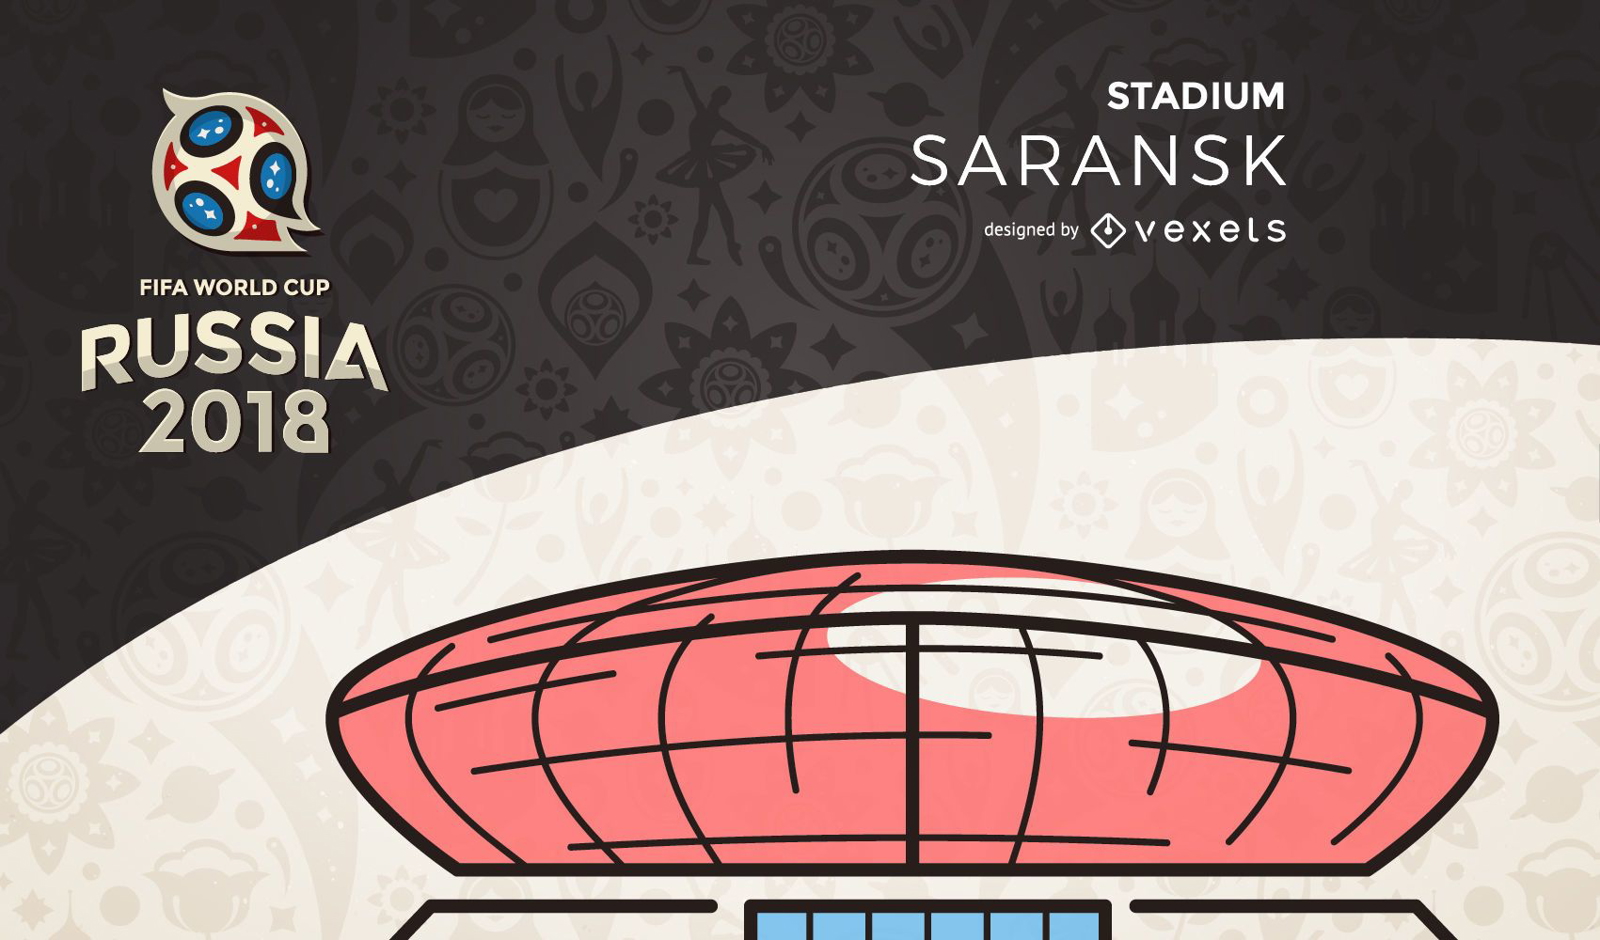 Rusia 2018 estadio Saransk